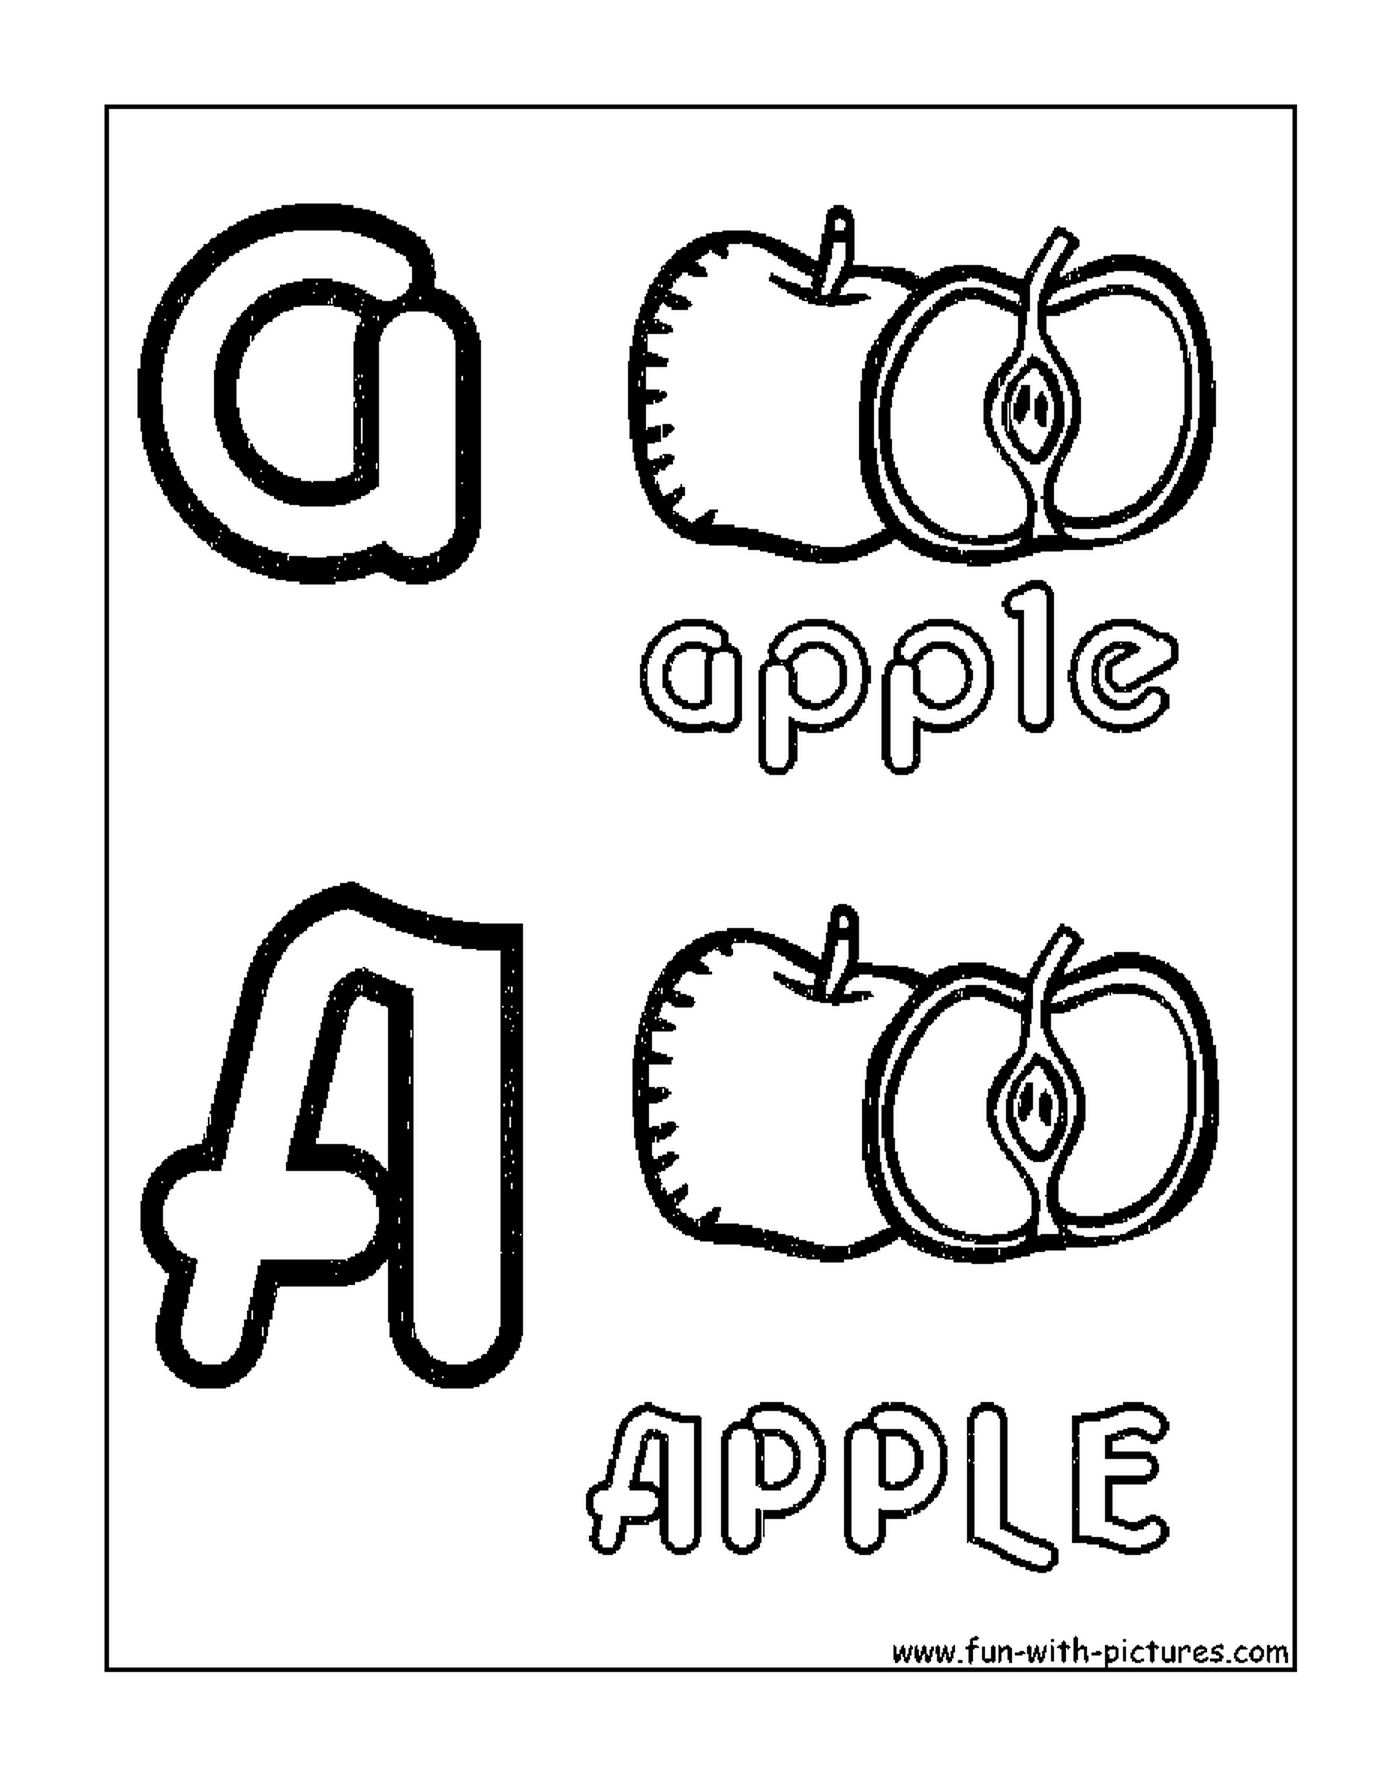  在字母表中的苹果 